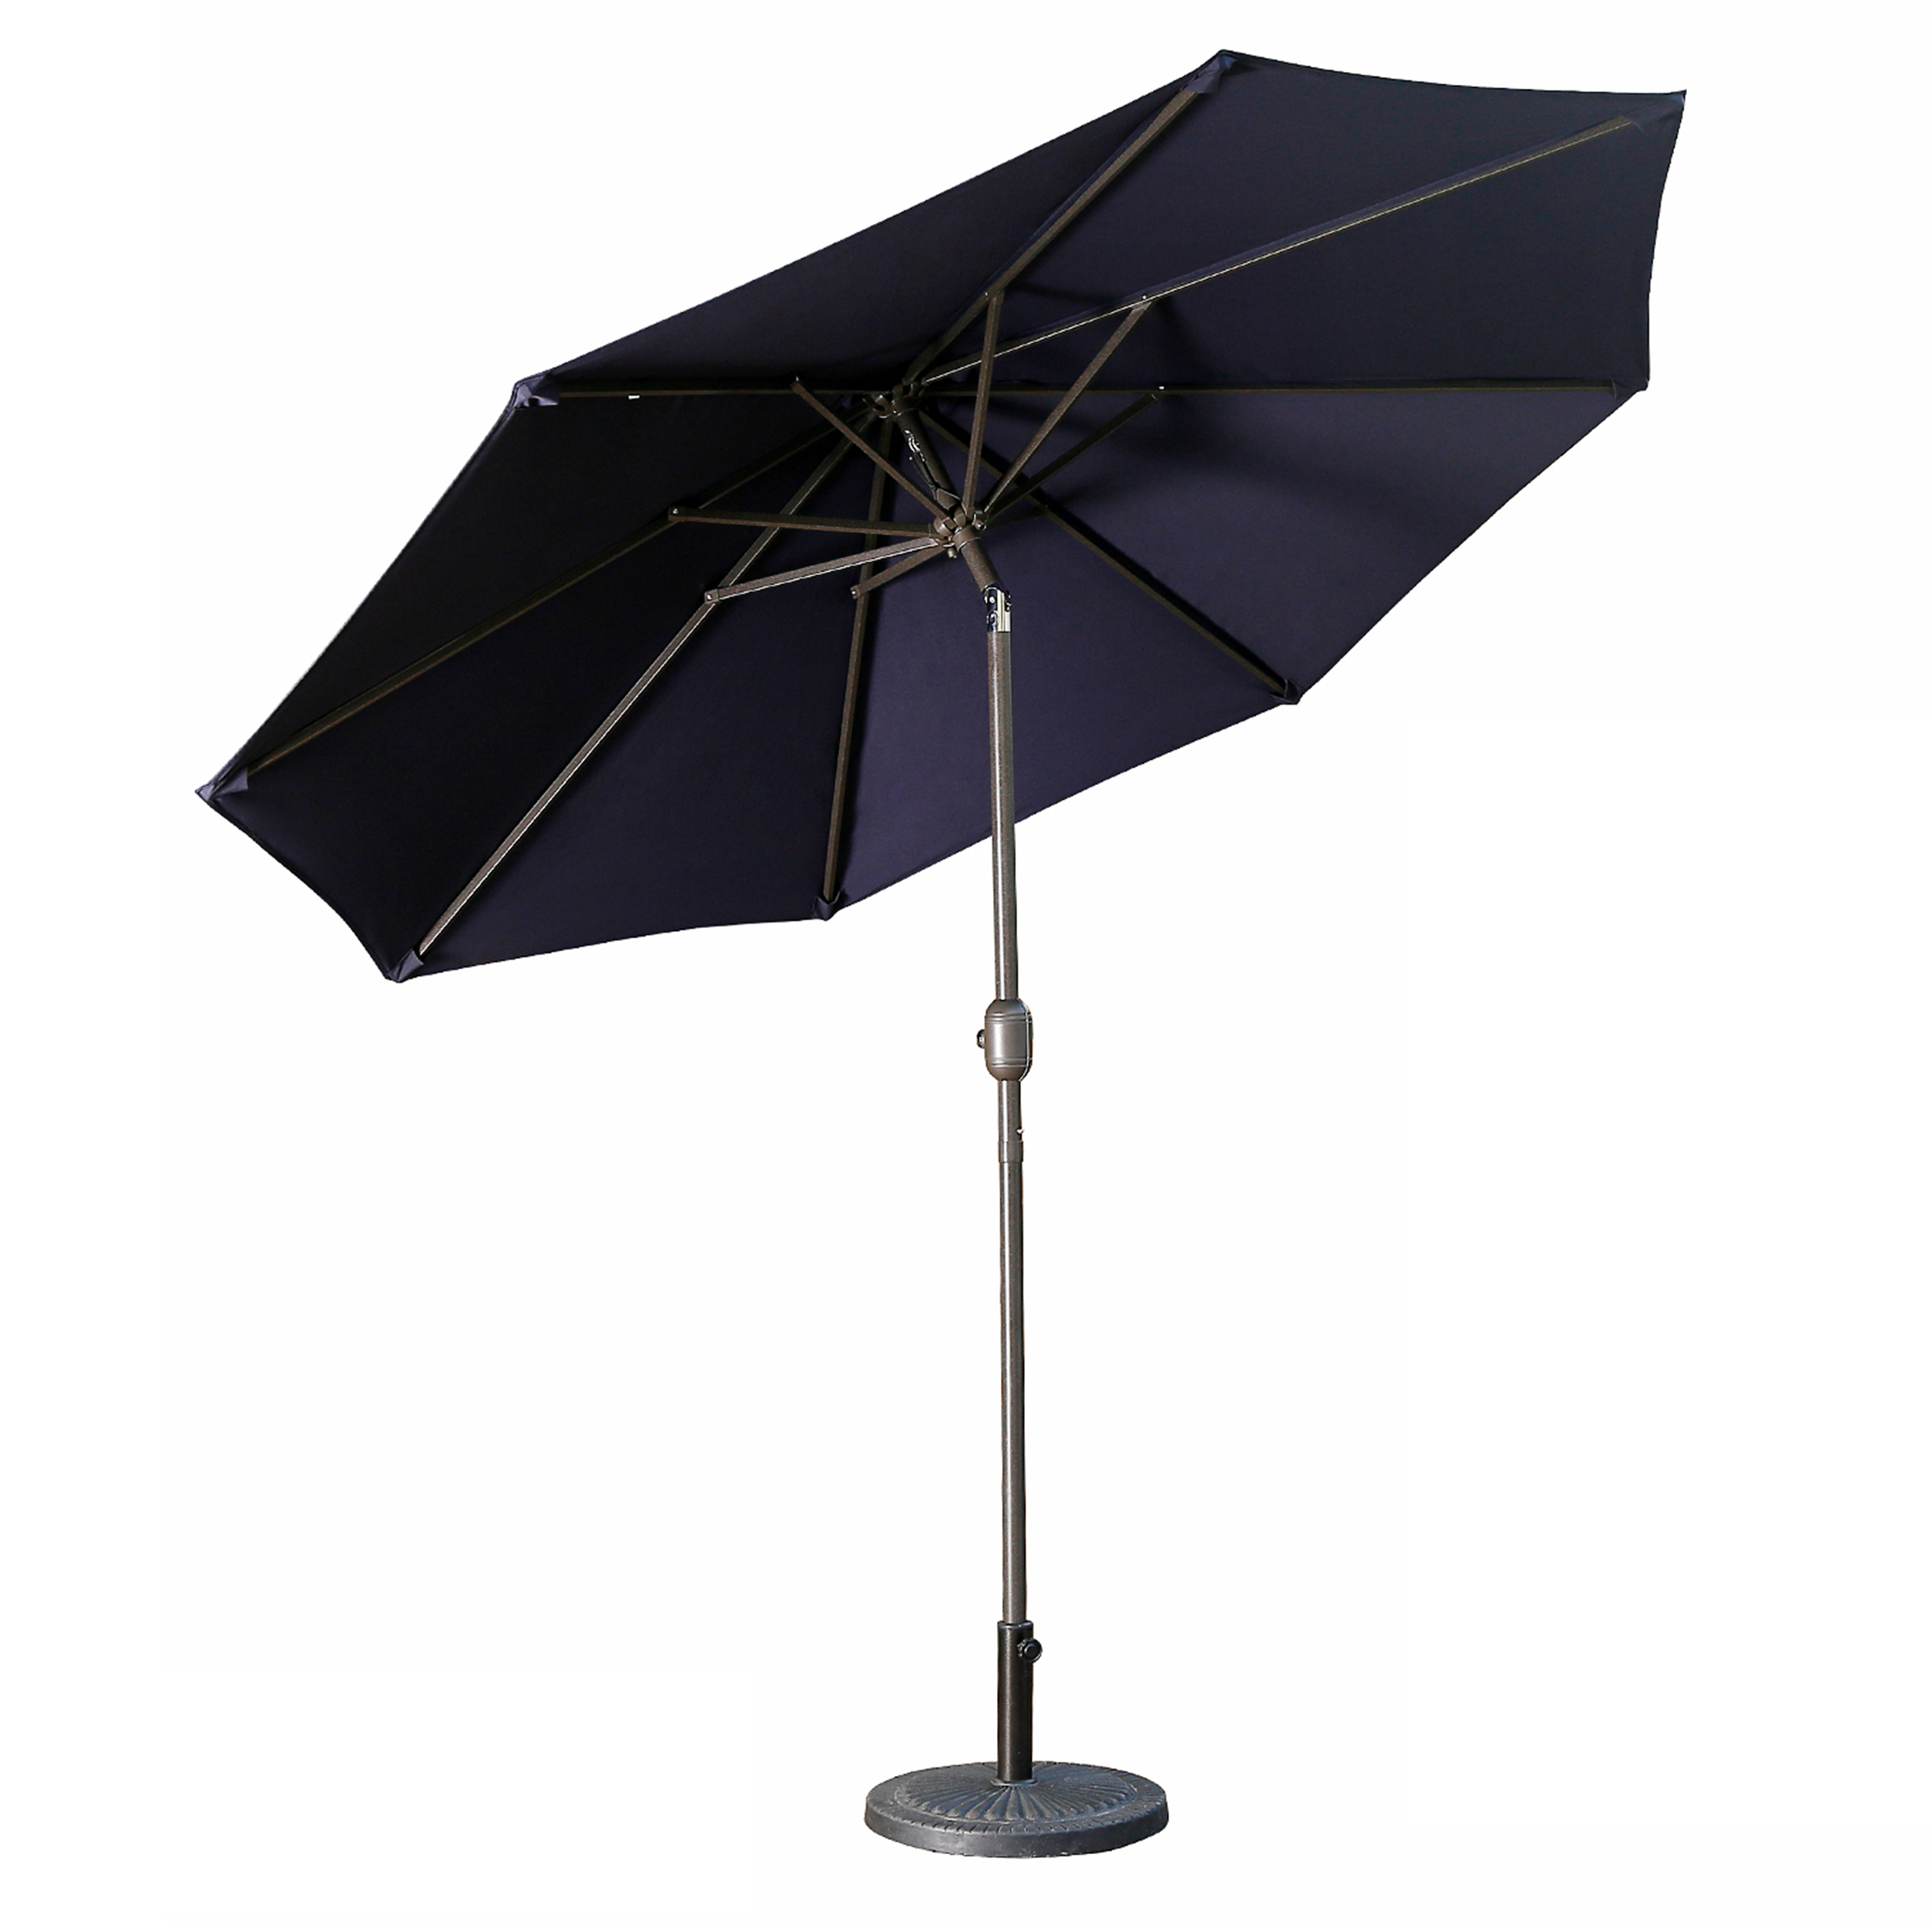 Casainc 9 ft. Alum Patio Umbrella in Navy Blue-CASAINC